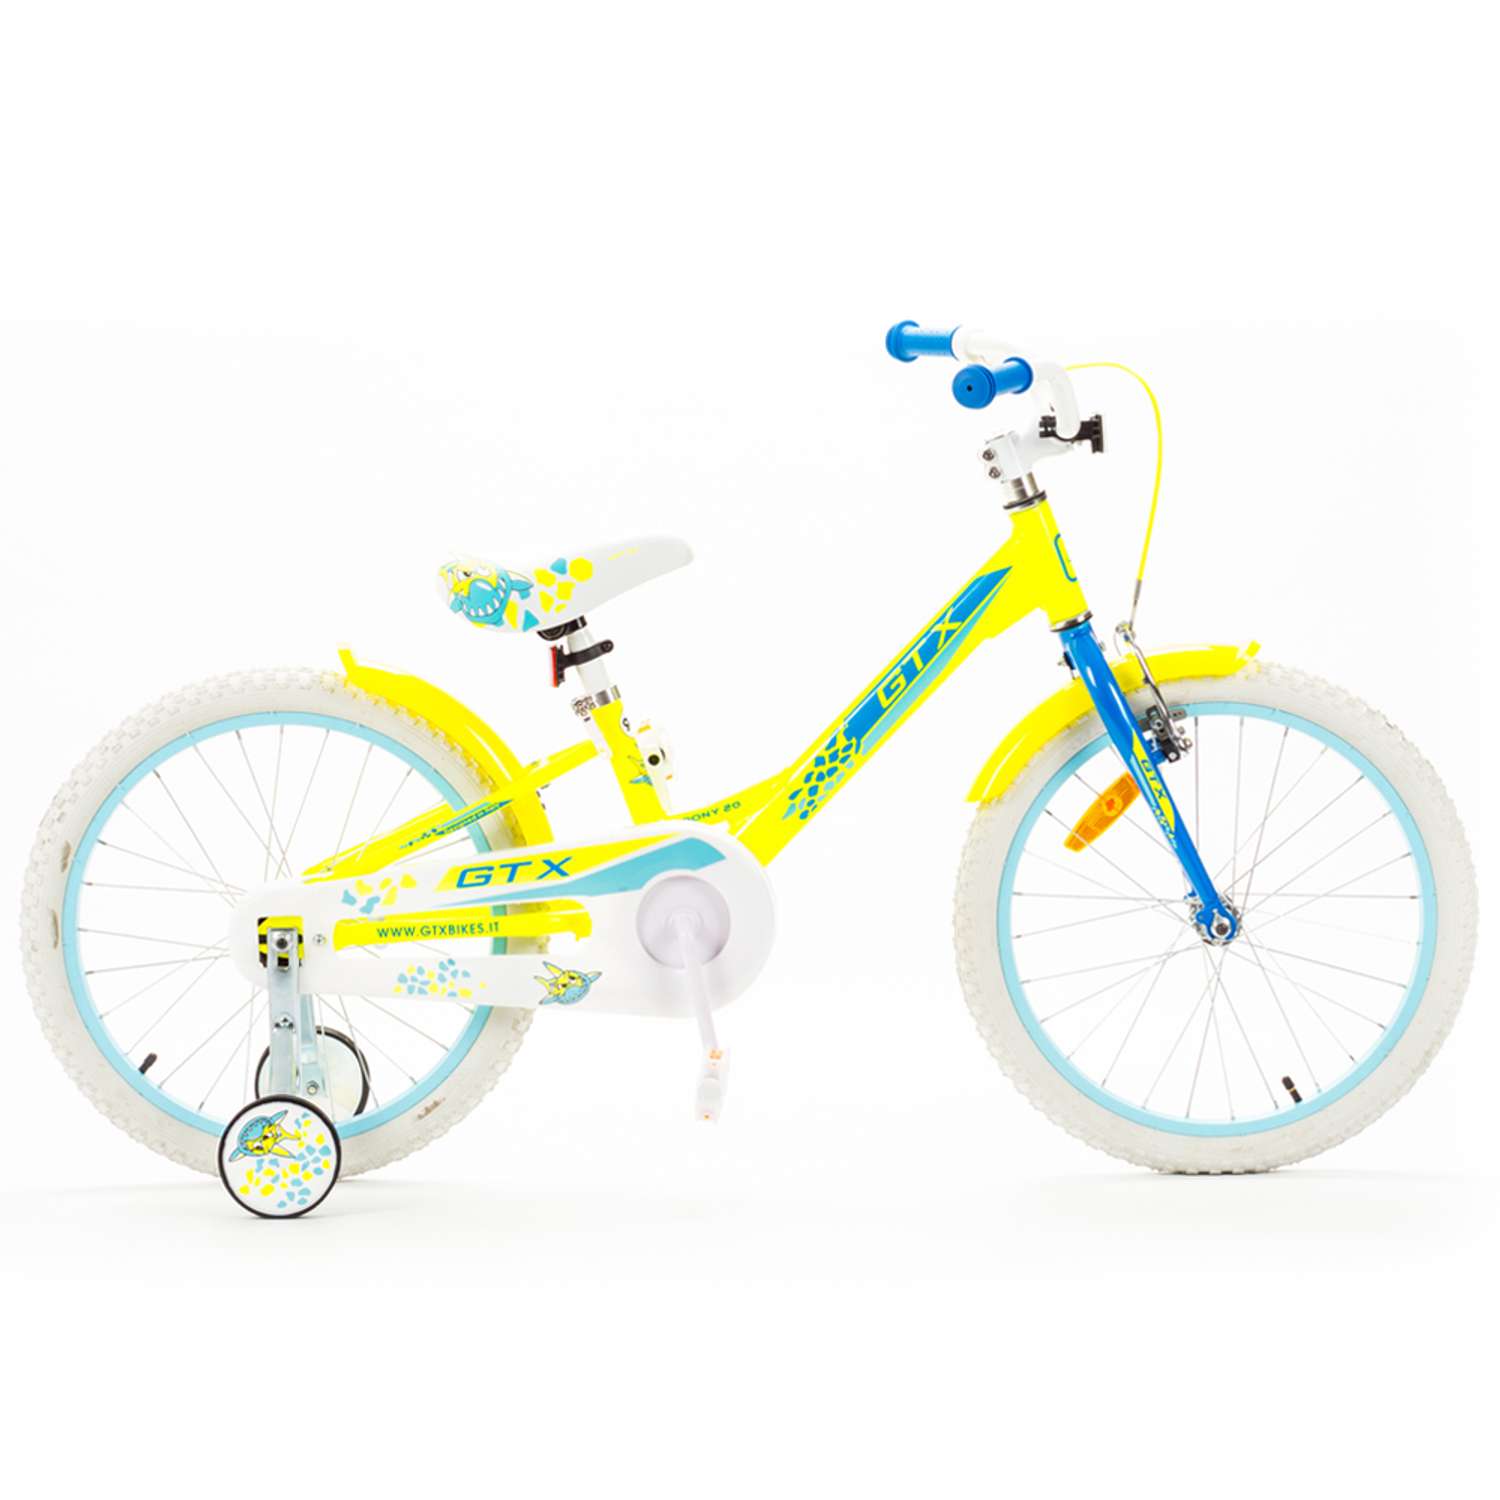 Велосипед GTX PONY рама 8 желтый - фото 1